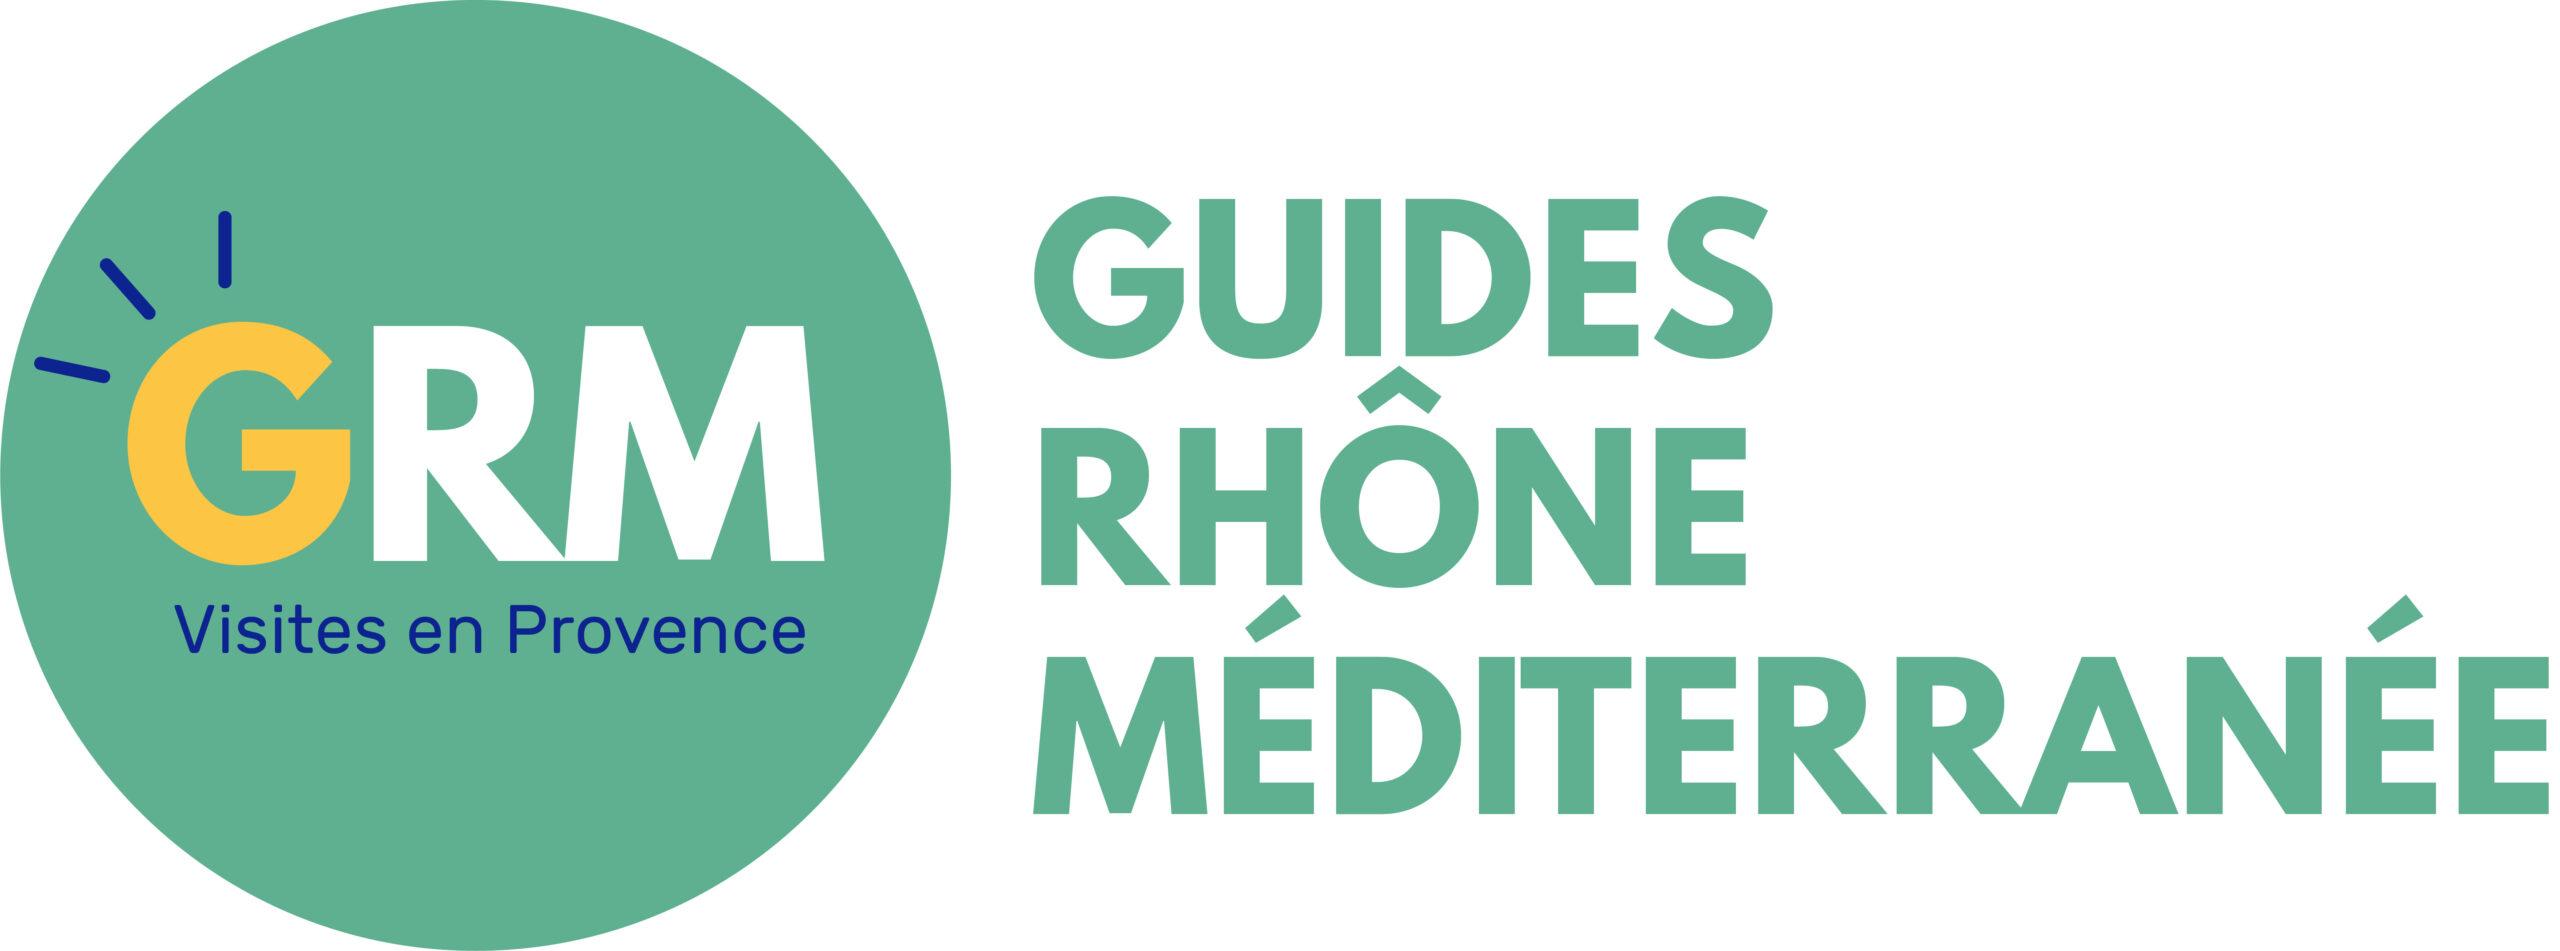 Guides Rhône Méditerranée guides conférenciers